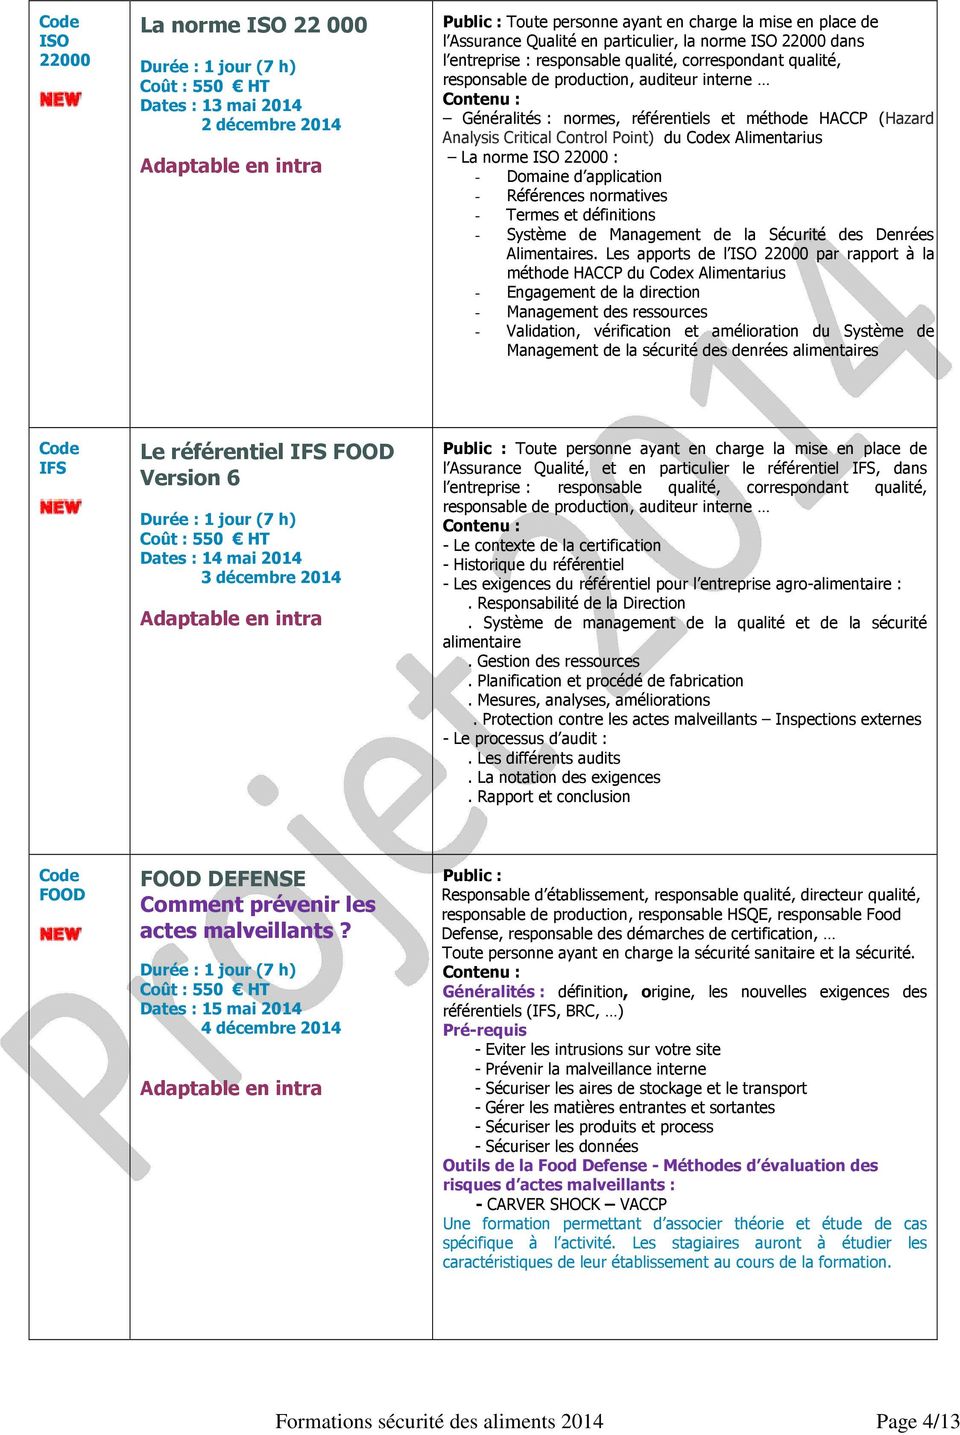 Alimentarius La norme ISO 22000 : - Domaine d application - Références normatives - Termes et définitions - Système de Management de la Sécurité des Denrées Alimentaires.